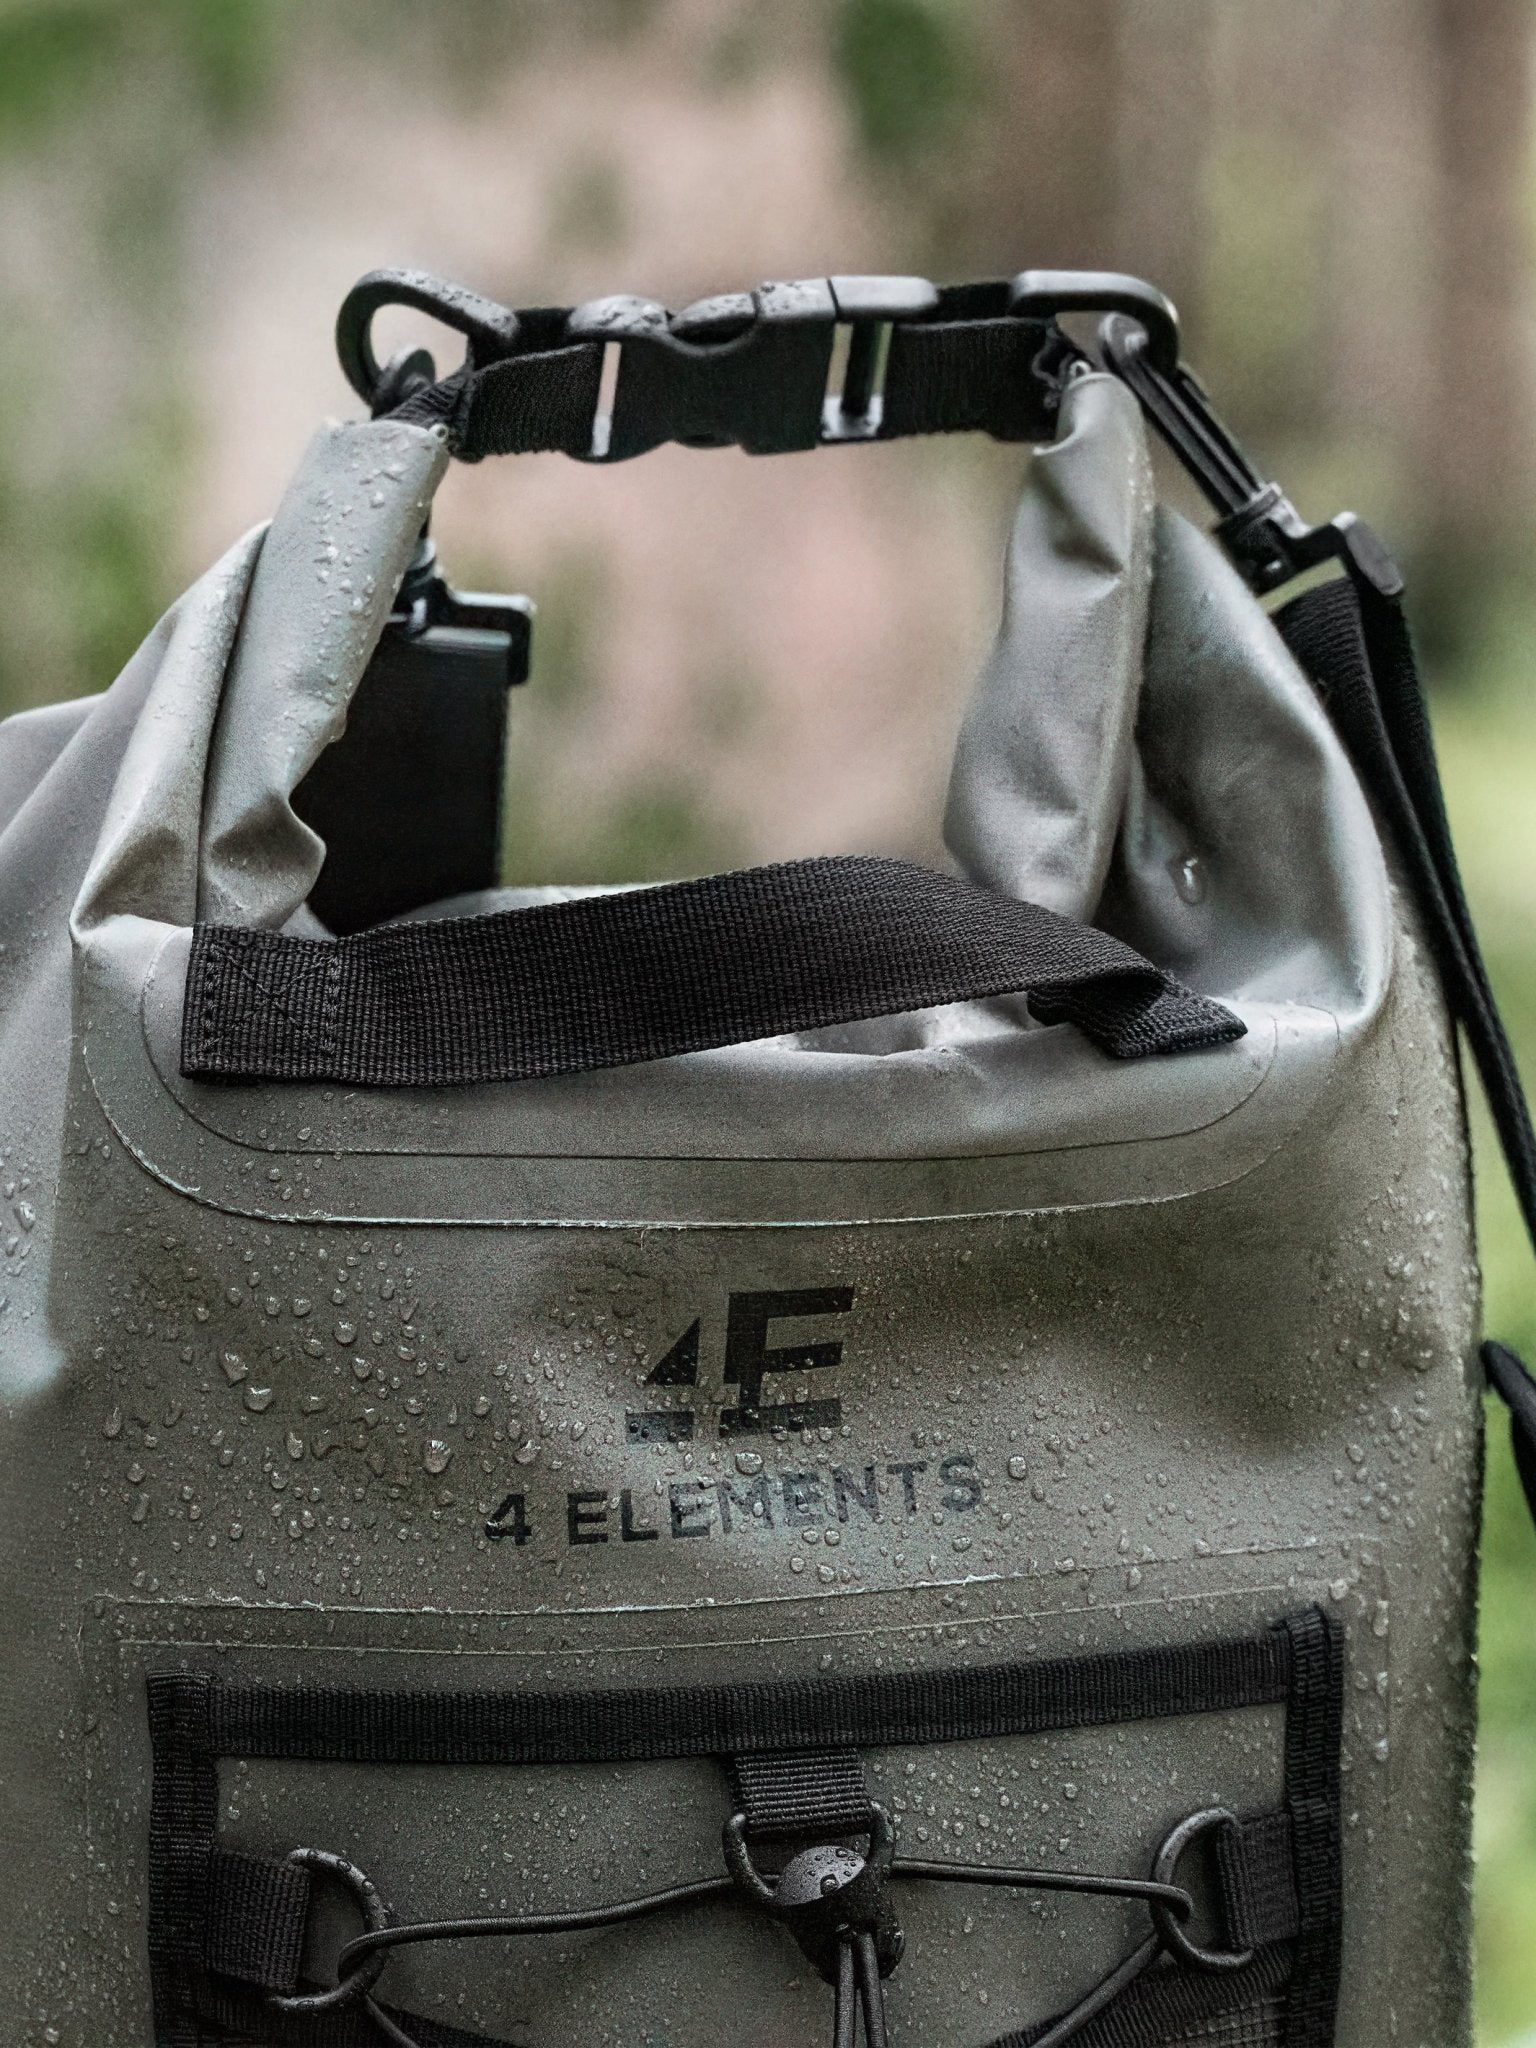 4 Elements - Waterproof bag and Dry Bag Roll Top waterproof Rucksack, Wet  bag & Hiking, waters sports or camping bag, 20L drybag